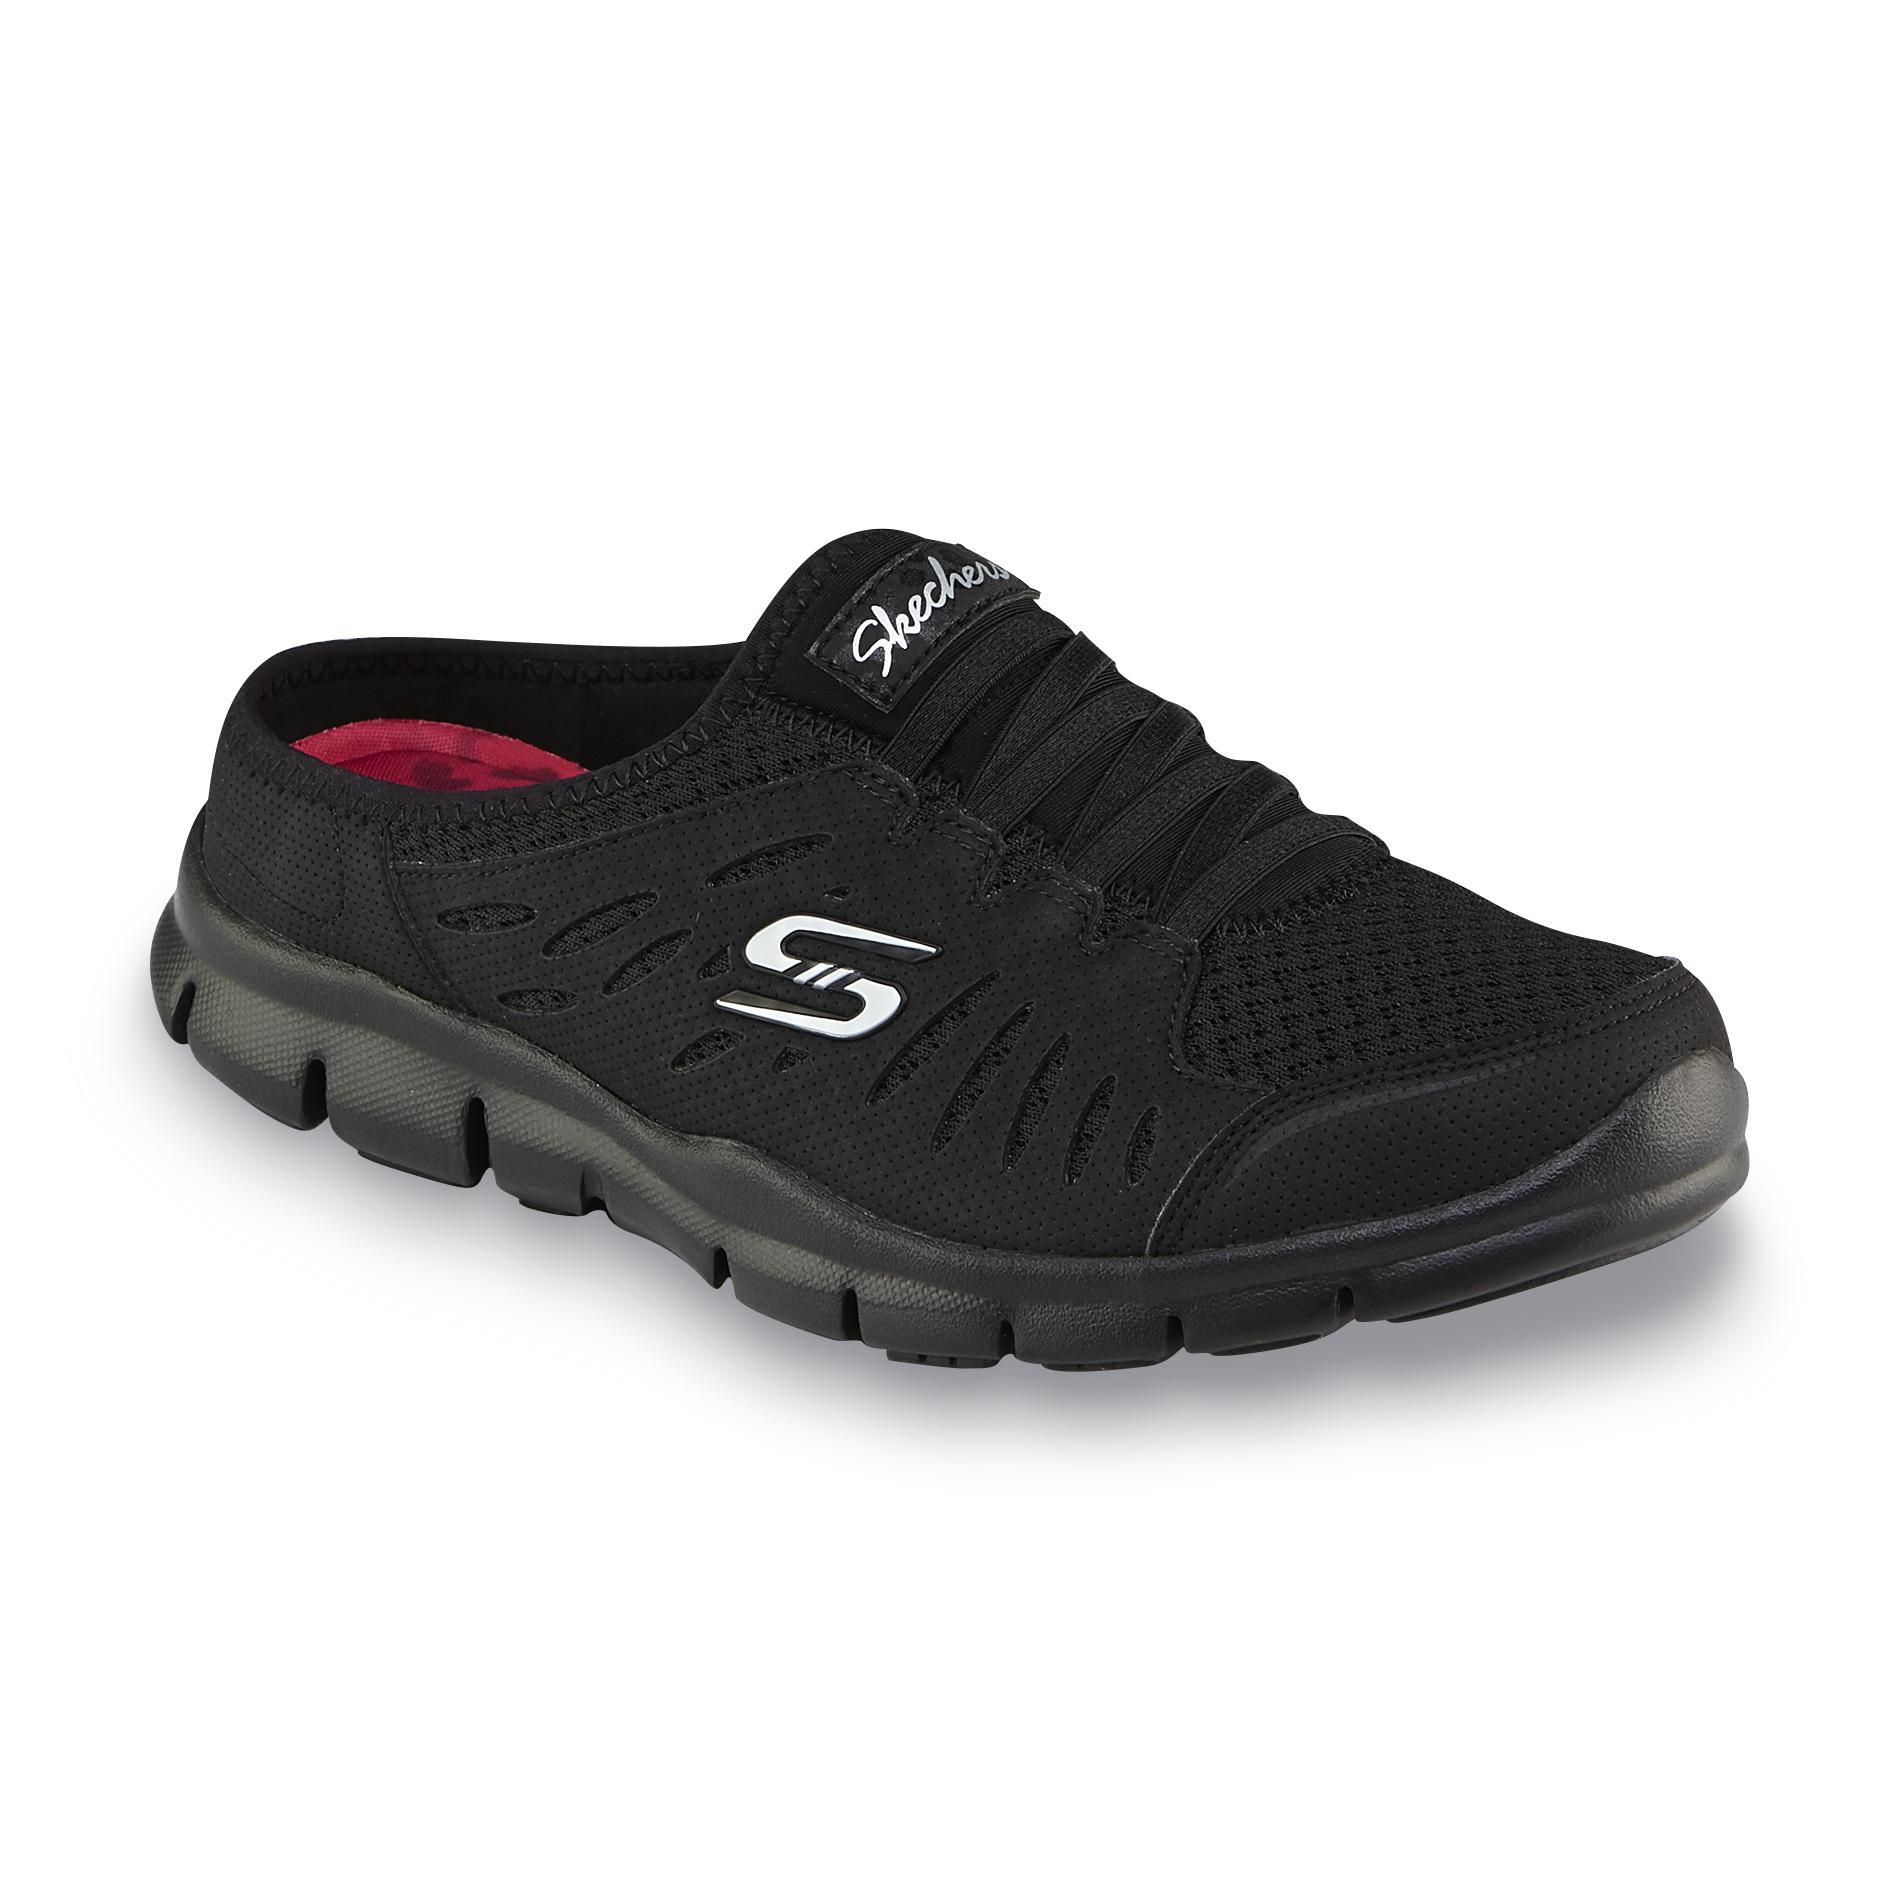 Sneakers \u0026 Athletic Shoes - Sears